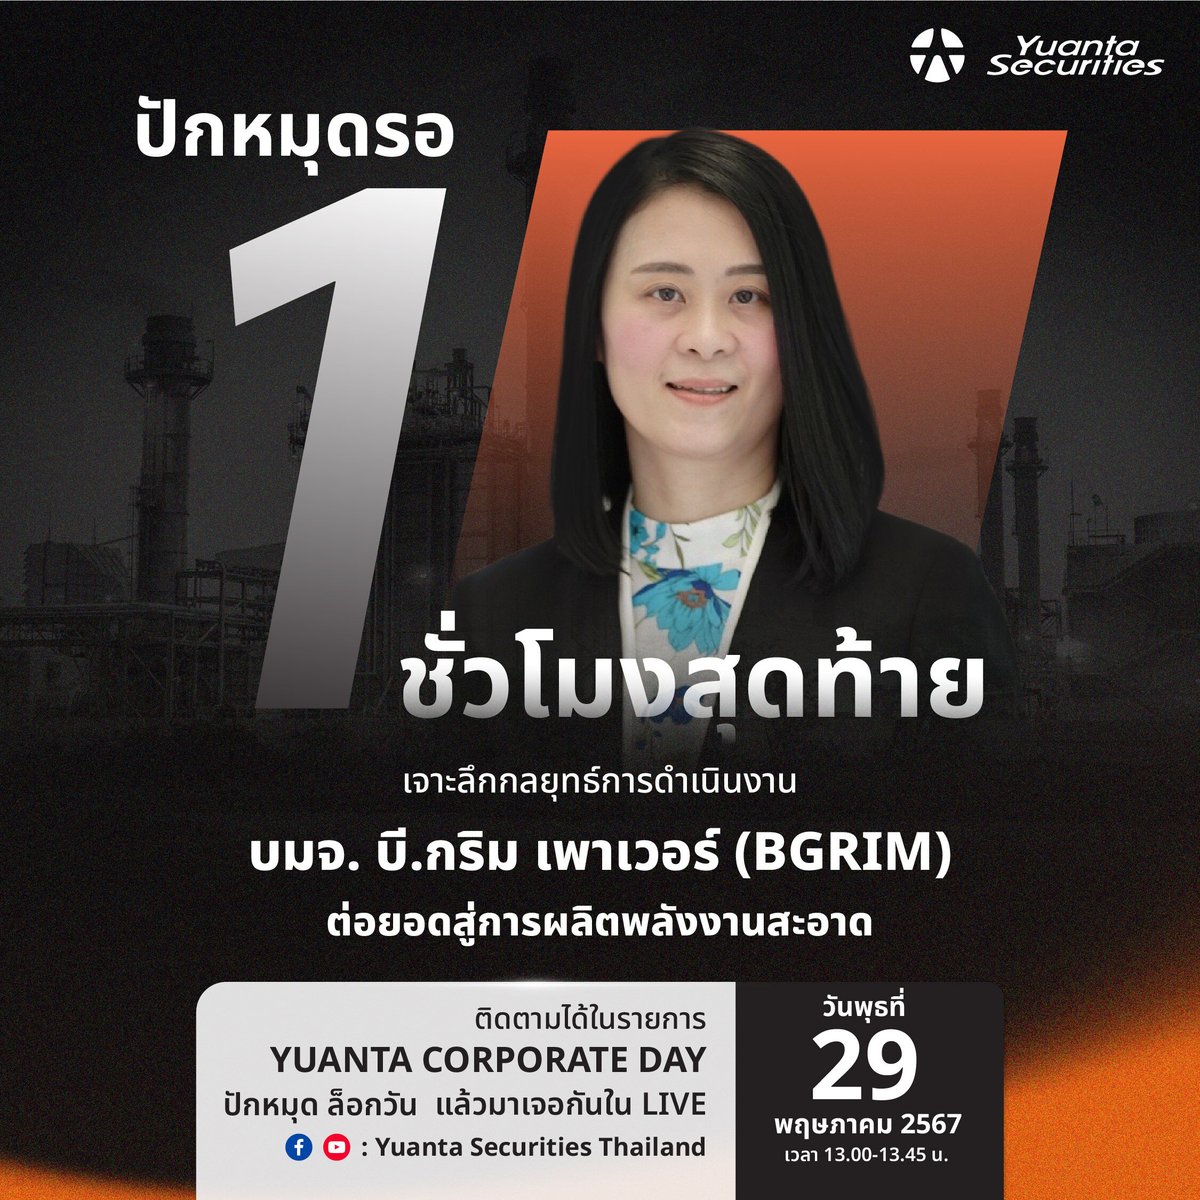 ปักหมุดรอ 1 ชั่วโมงสุดท้าย💥
เจาะลึกกลยุทธ์การลงทุน โดยคุณศิริวงศ์ บวรบุญฤทัย Executive Vice President - Finance and Accounting
มาร่วมเปิดมุมมองการลงทุน ค้นพบกลยุทธ์ ไขทุกข้อสงสัย📈💰
⏰ทาง Facebook/ Youtube : Yuanta Securities Thailand 
#yuanta #หยวนต้า #บีกริม #BGRIM